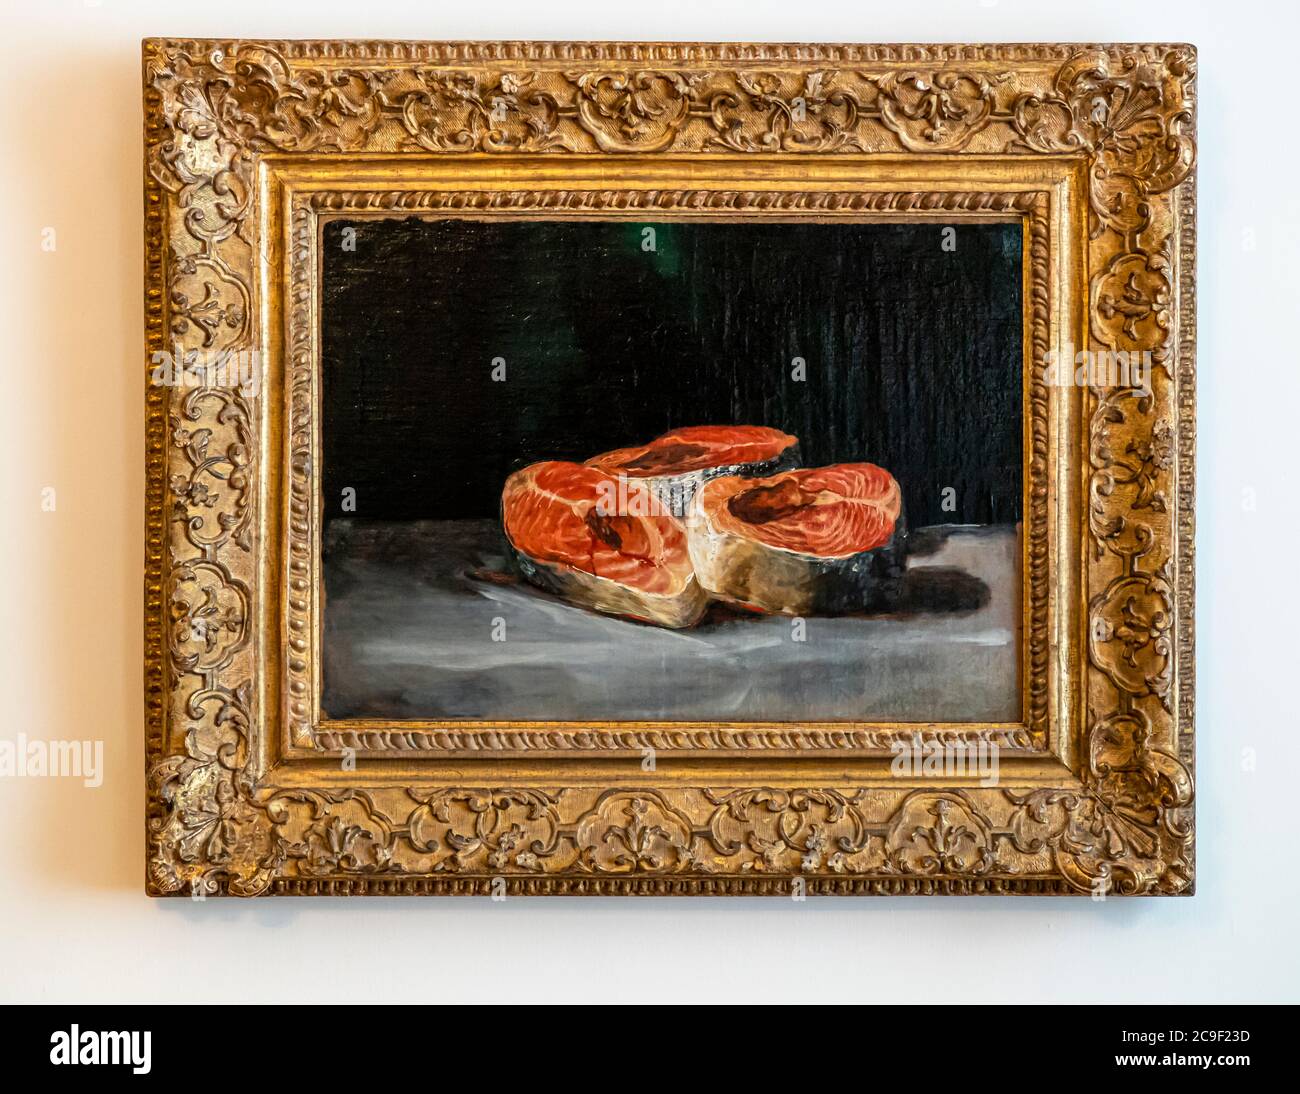 The Still Life with Three Salmon Slices di Francisco de Goya fa parte della collezione Reinhart costituita da Oskar Reinhart a Winterthur, in Svizzera. La natura morta con tre fette di salmone è stata dipinta da Francisco de Goya più di 200 anni fa. La prospettiva e gli effetti di luce sono notevoli Foto Stock